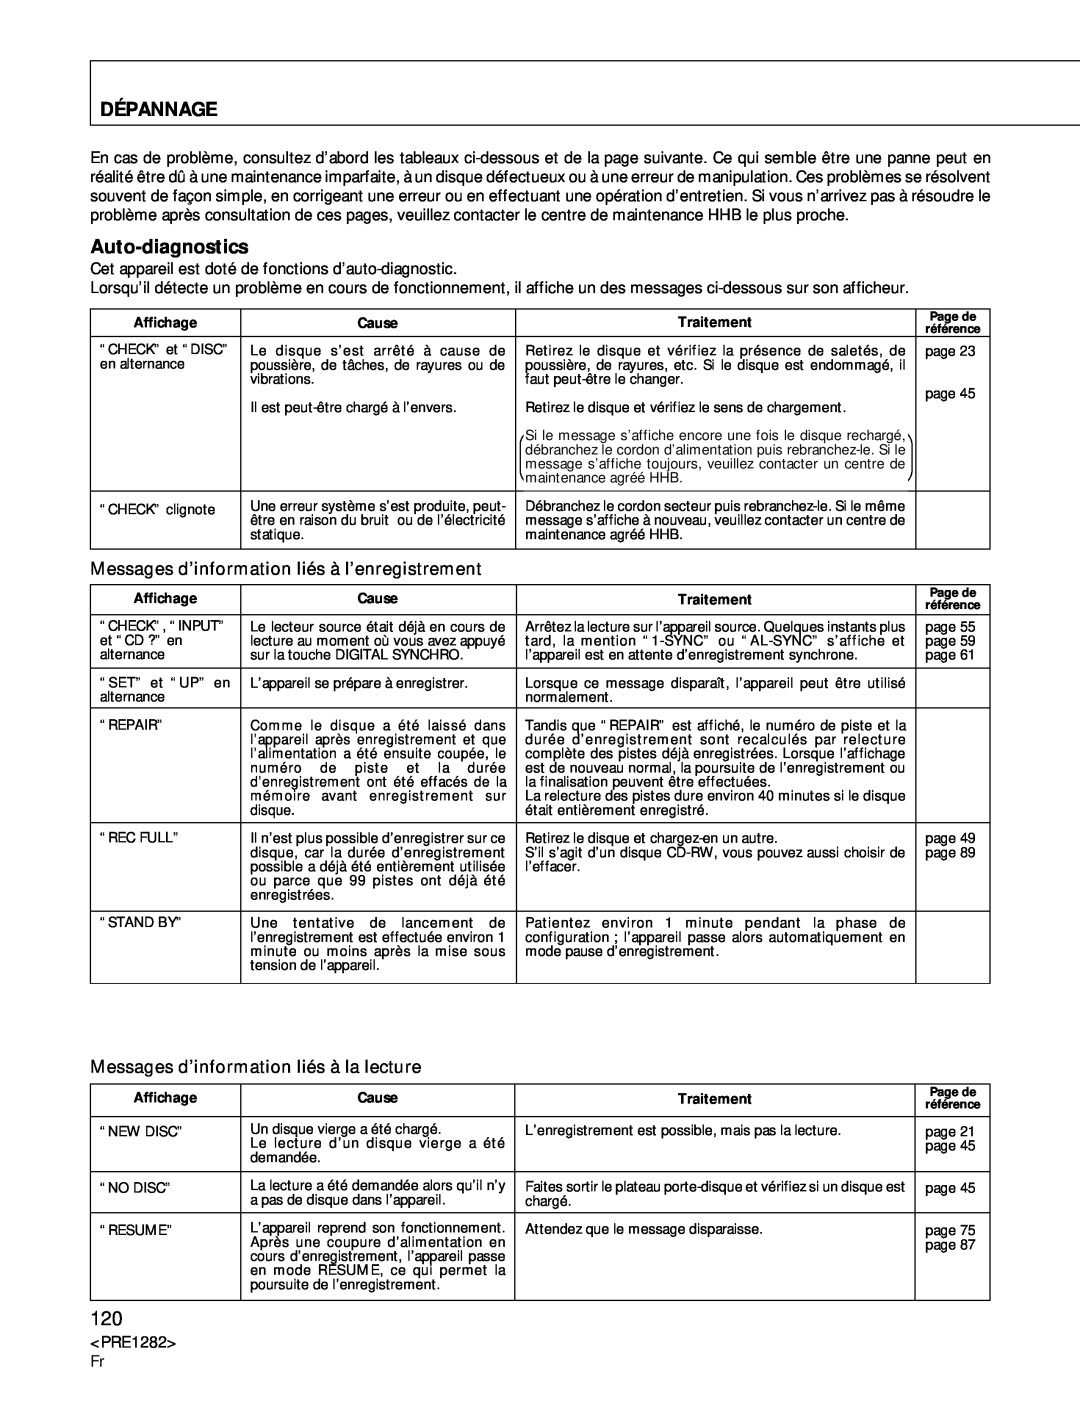 Americana Appliances CDR-850 manual Dépannage, Auto-diagnostics 